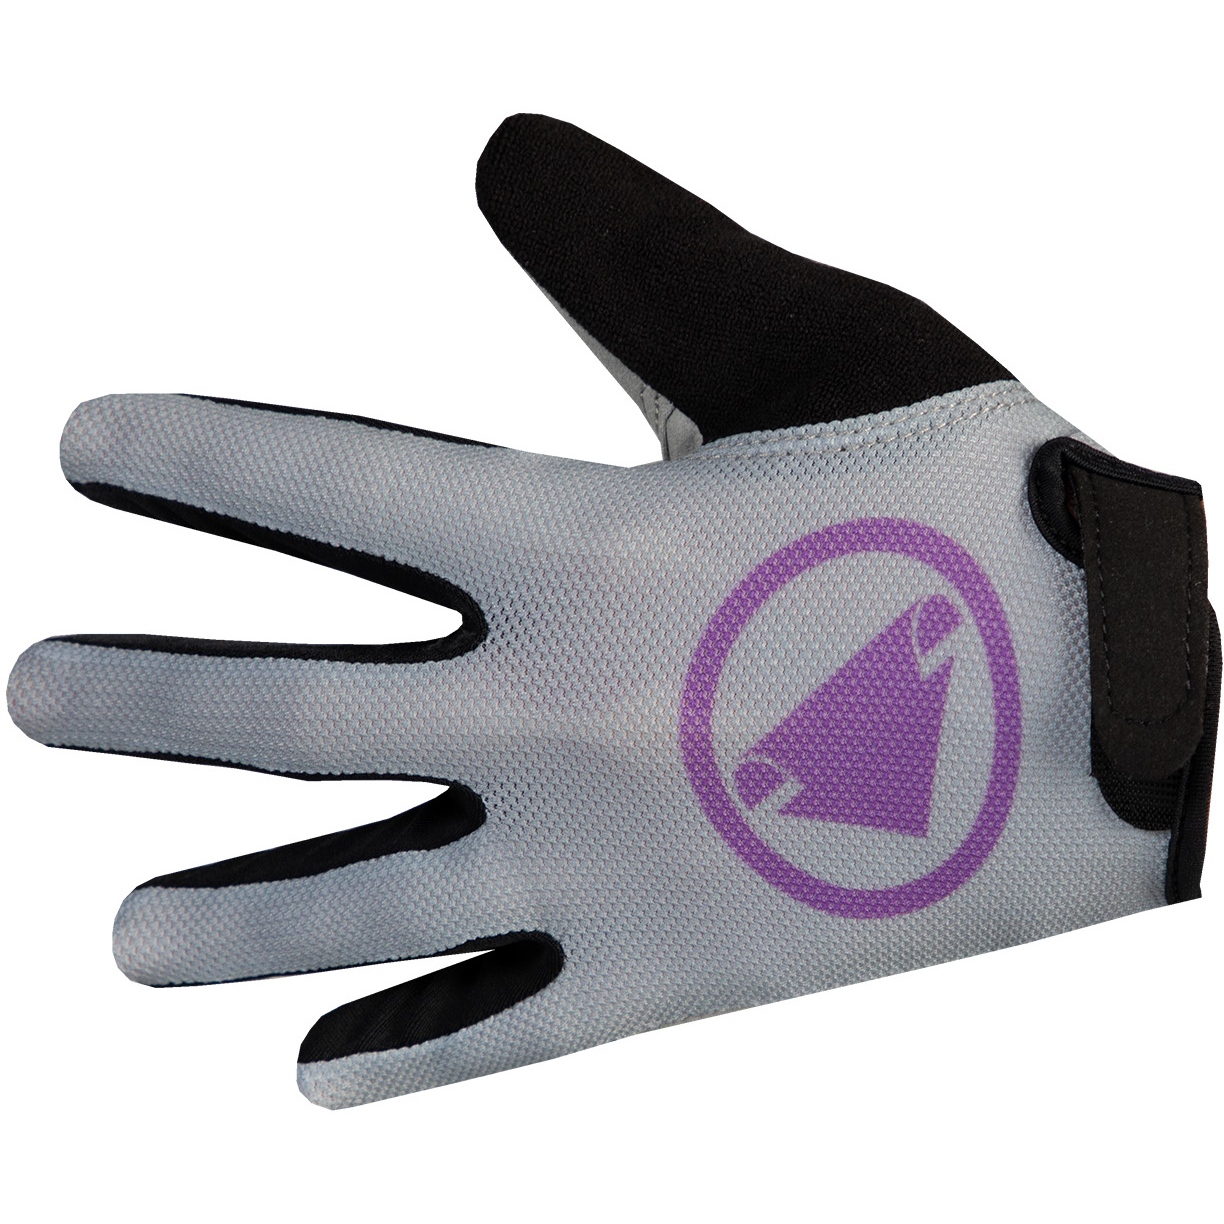 Produktbild von Endura Hummvee Handschuhe Kinder - grau